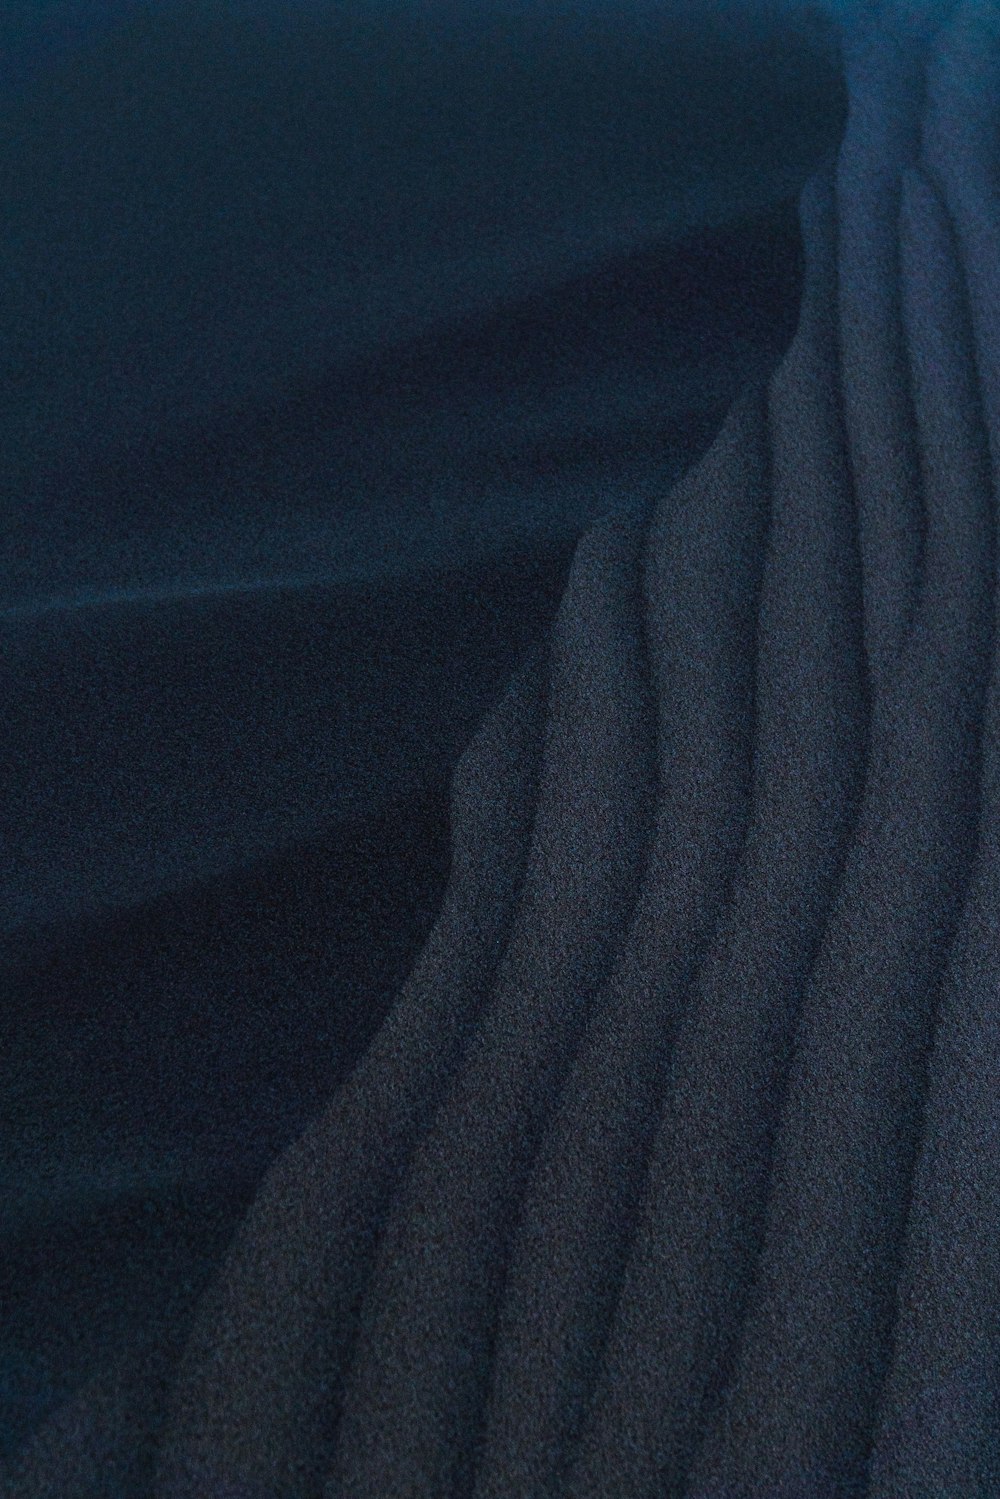 blaues Textil in Nahaufnahme